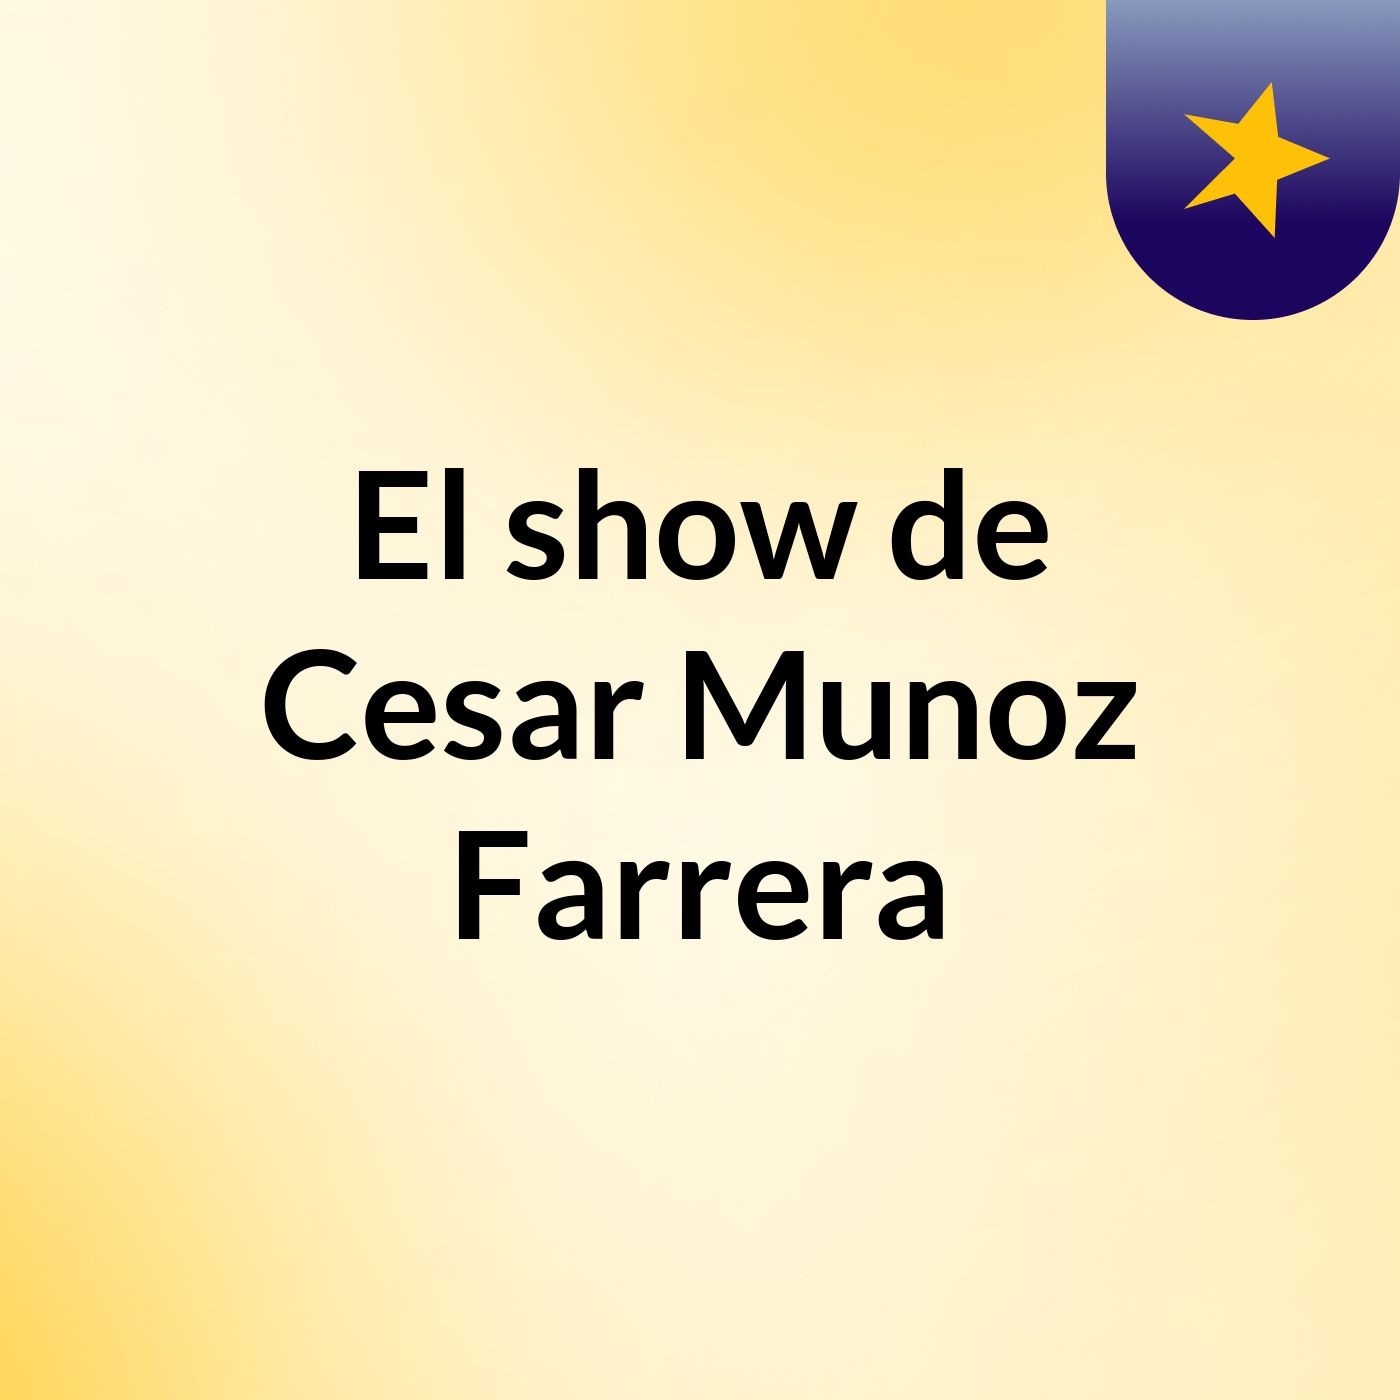 El show de Cesar Munoz Farrera